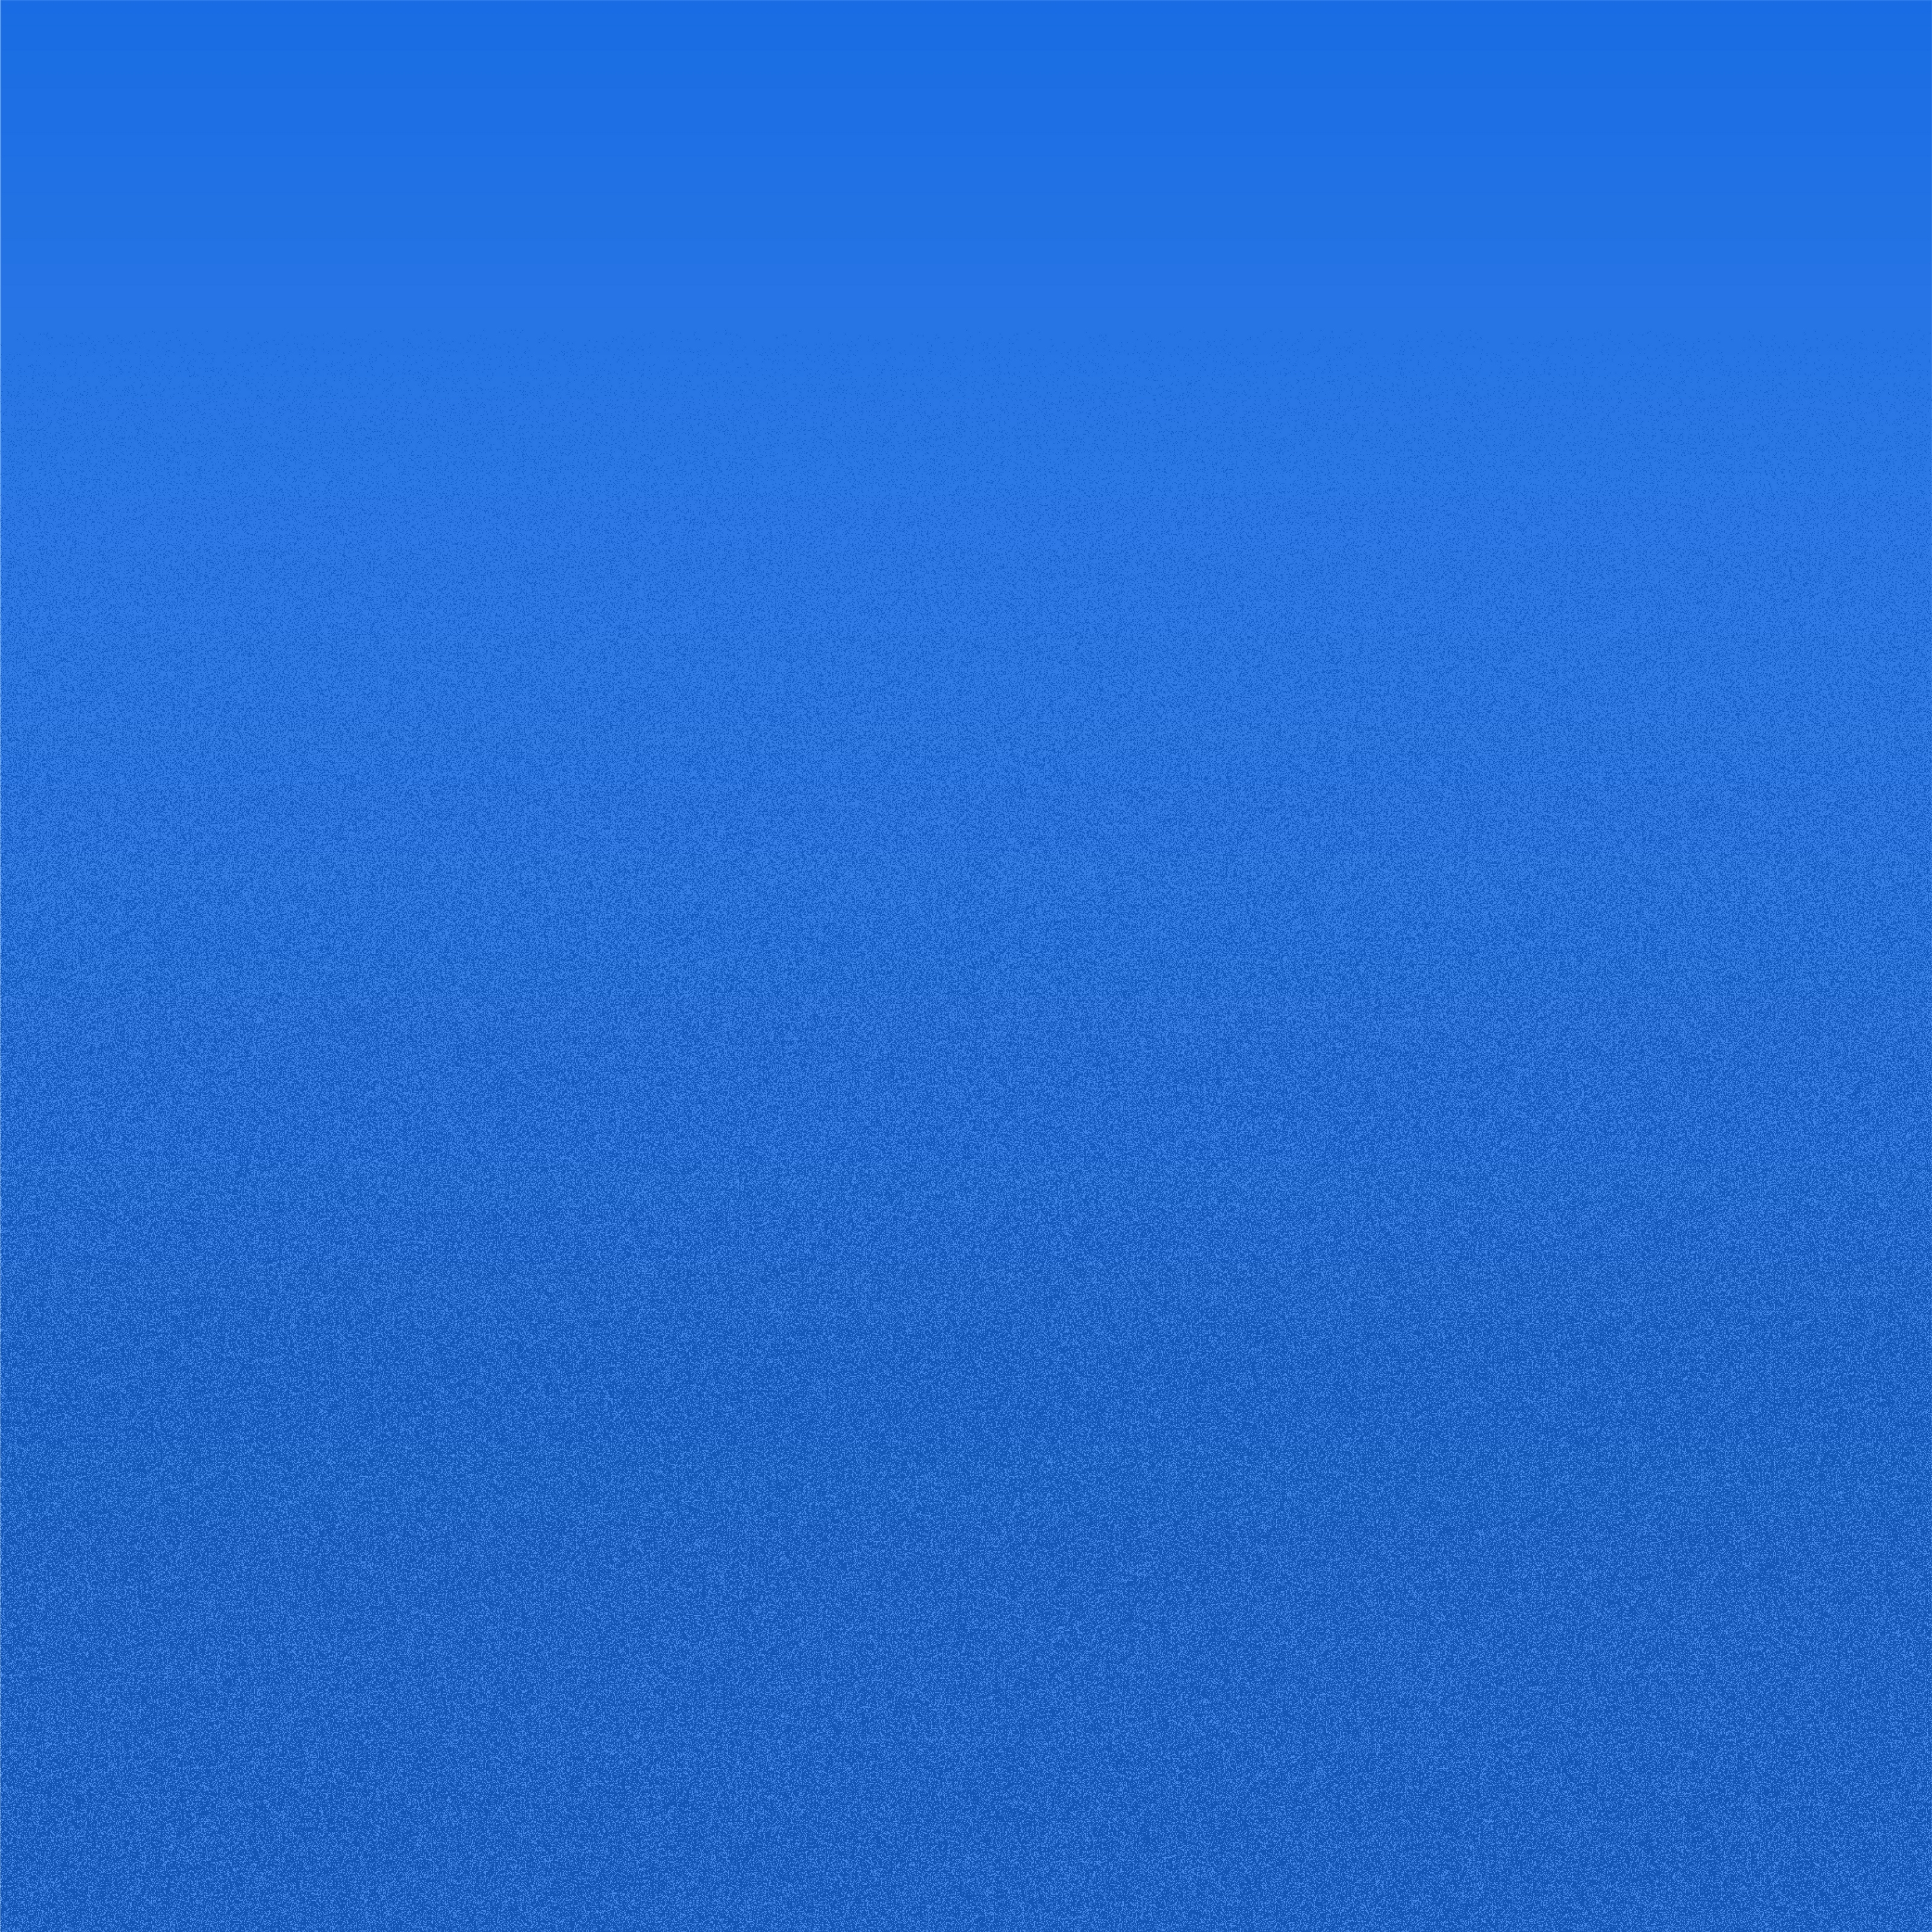 iPad Wallpapers Blue iPad Wallpaper 3208x3208 px